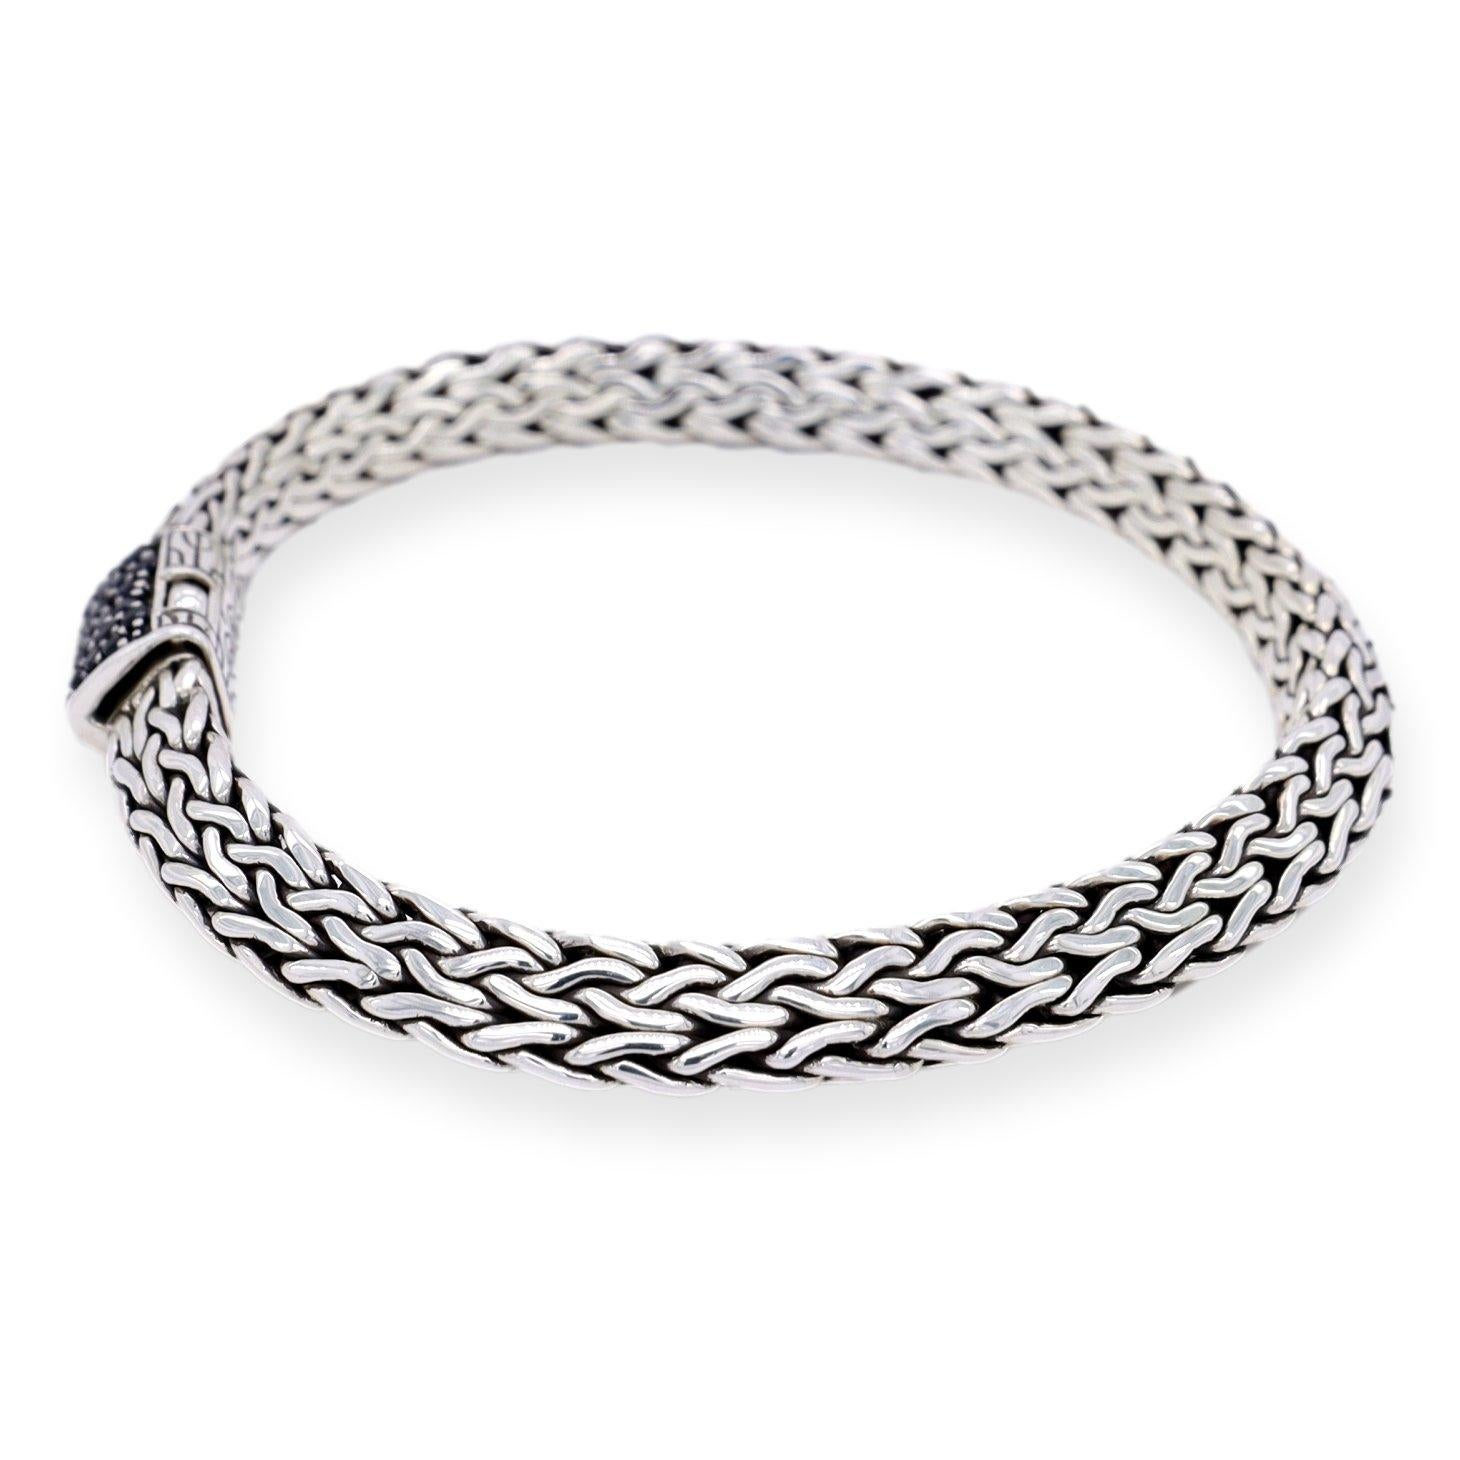 Le bracelet John Hardy Sterling Silver Black Sapphire Tiga Chain est un bijou magnifique et élégant en argent sterling de haute qualité. Le bracelet présente des saphirs traités en noir, sertis dans une élégante chaîne Tiga de 6,5 mm. Il mesure 7,25